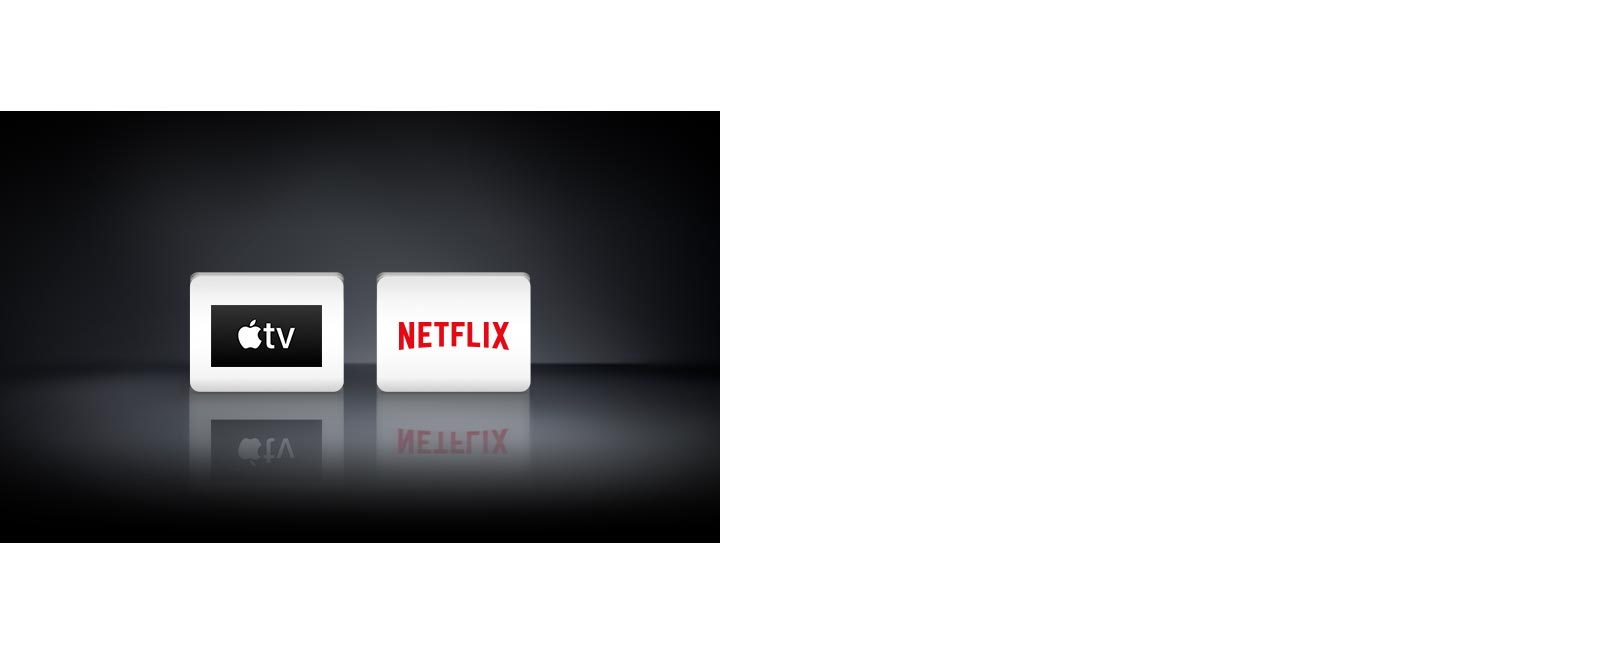 Bốn logo: Ứng dụng Apple TV, Netflix.